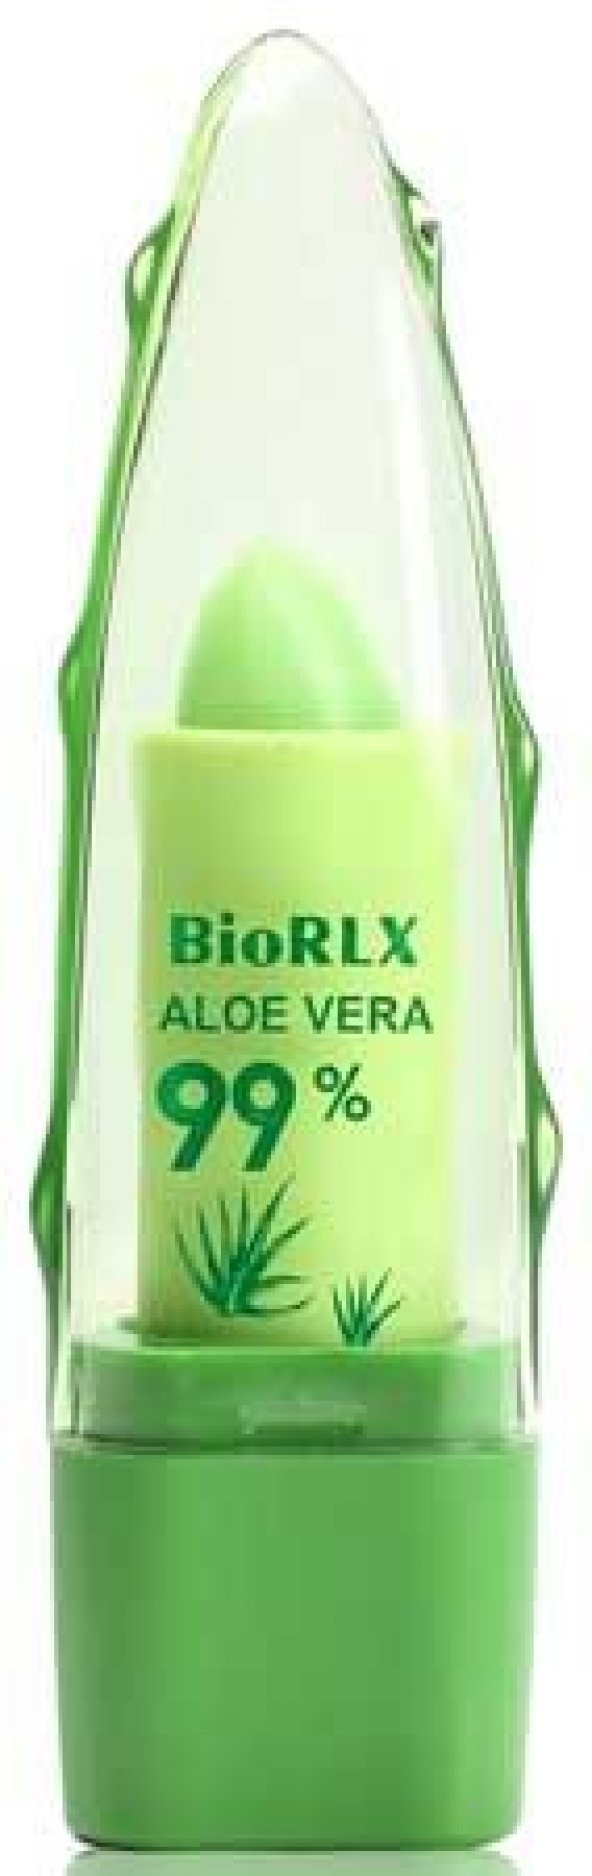 BioRLX Aloe Vera %99 Lip Balm